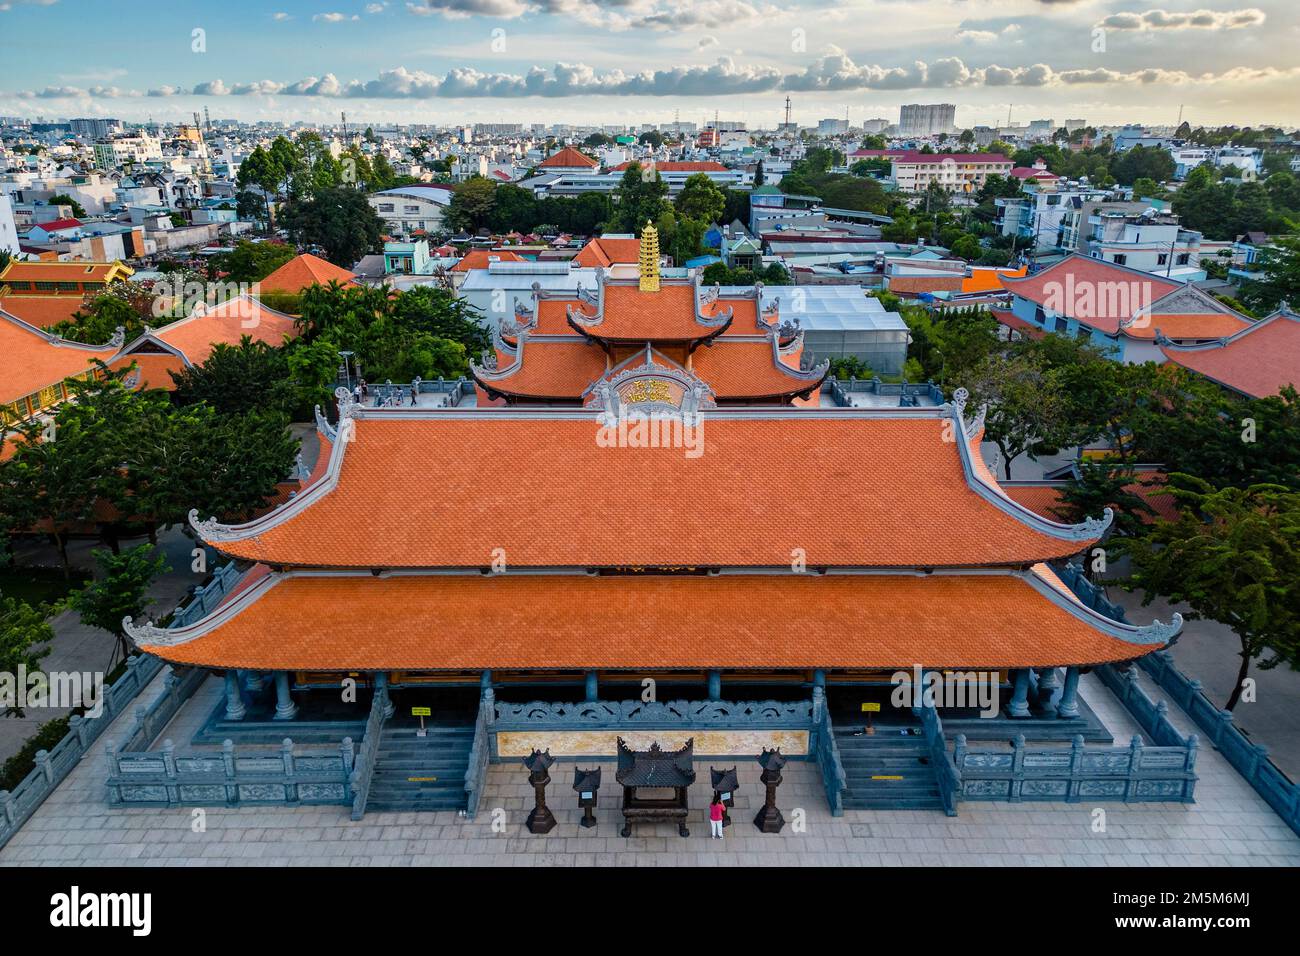 Das Kloster Vinh Nghiem befindet sich am 19. Dezember 2021Vietnam in der HT 31 Street, Hiep Thanh ward, District 12, Ho Chi Minh City (Saigon) Stockfoto